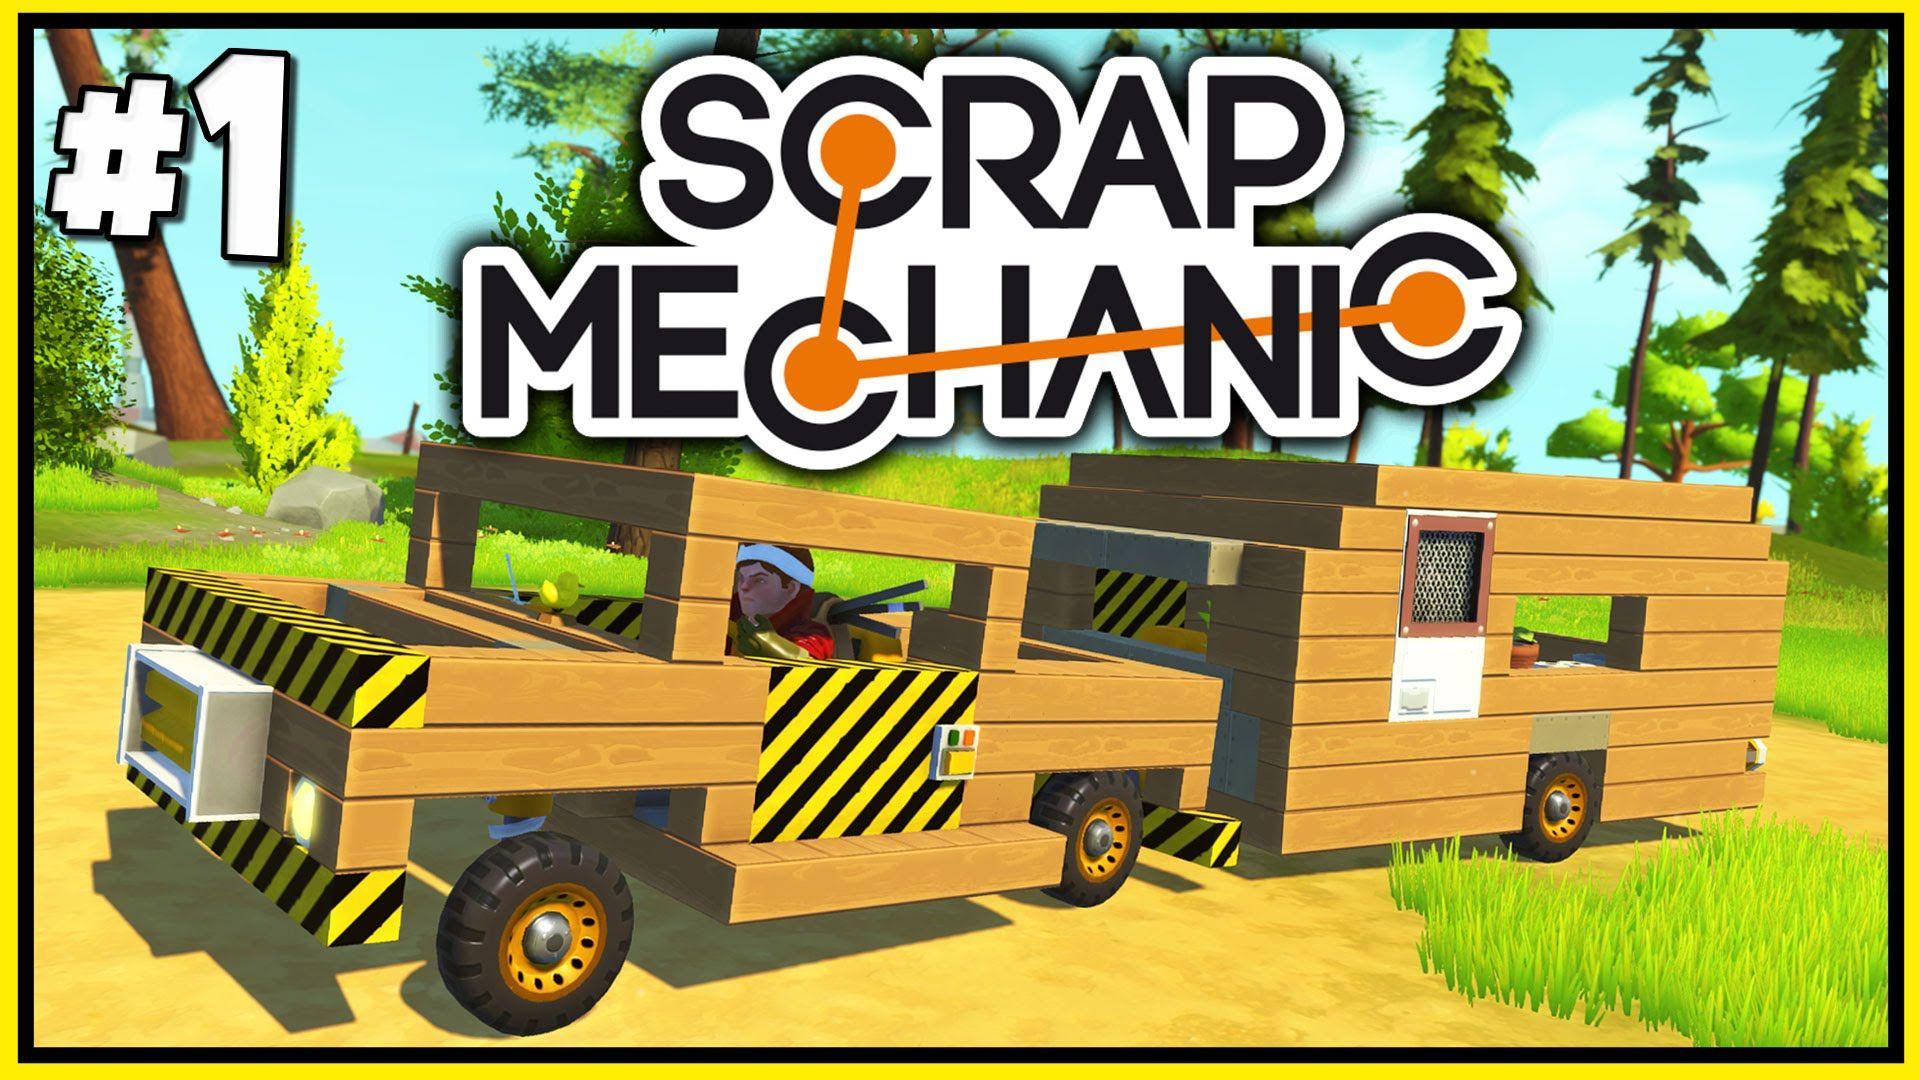 Scrap Mechanic Gameplay and Caravan Camping